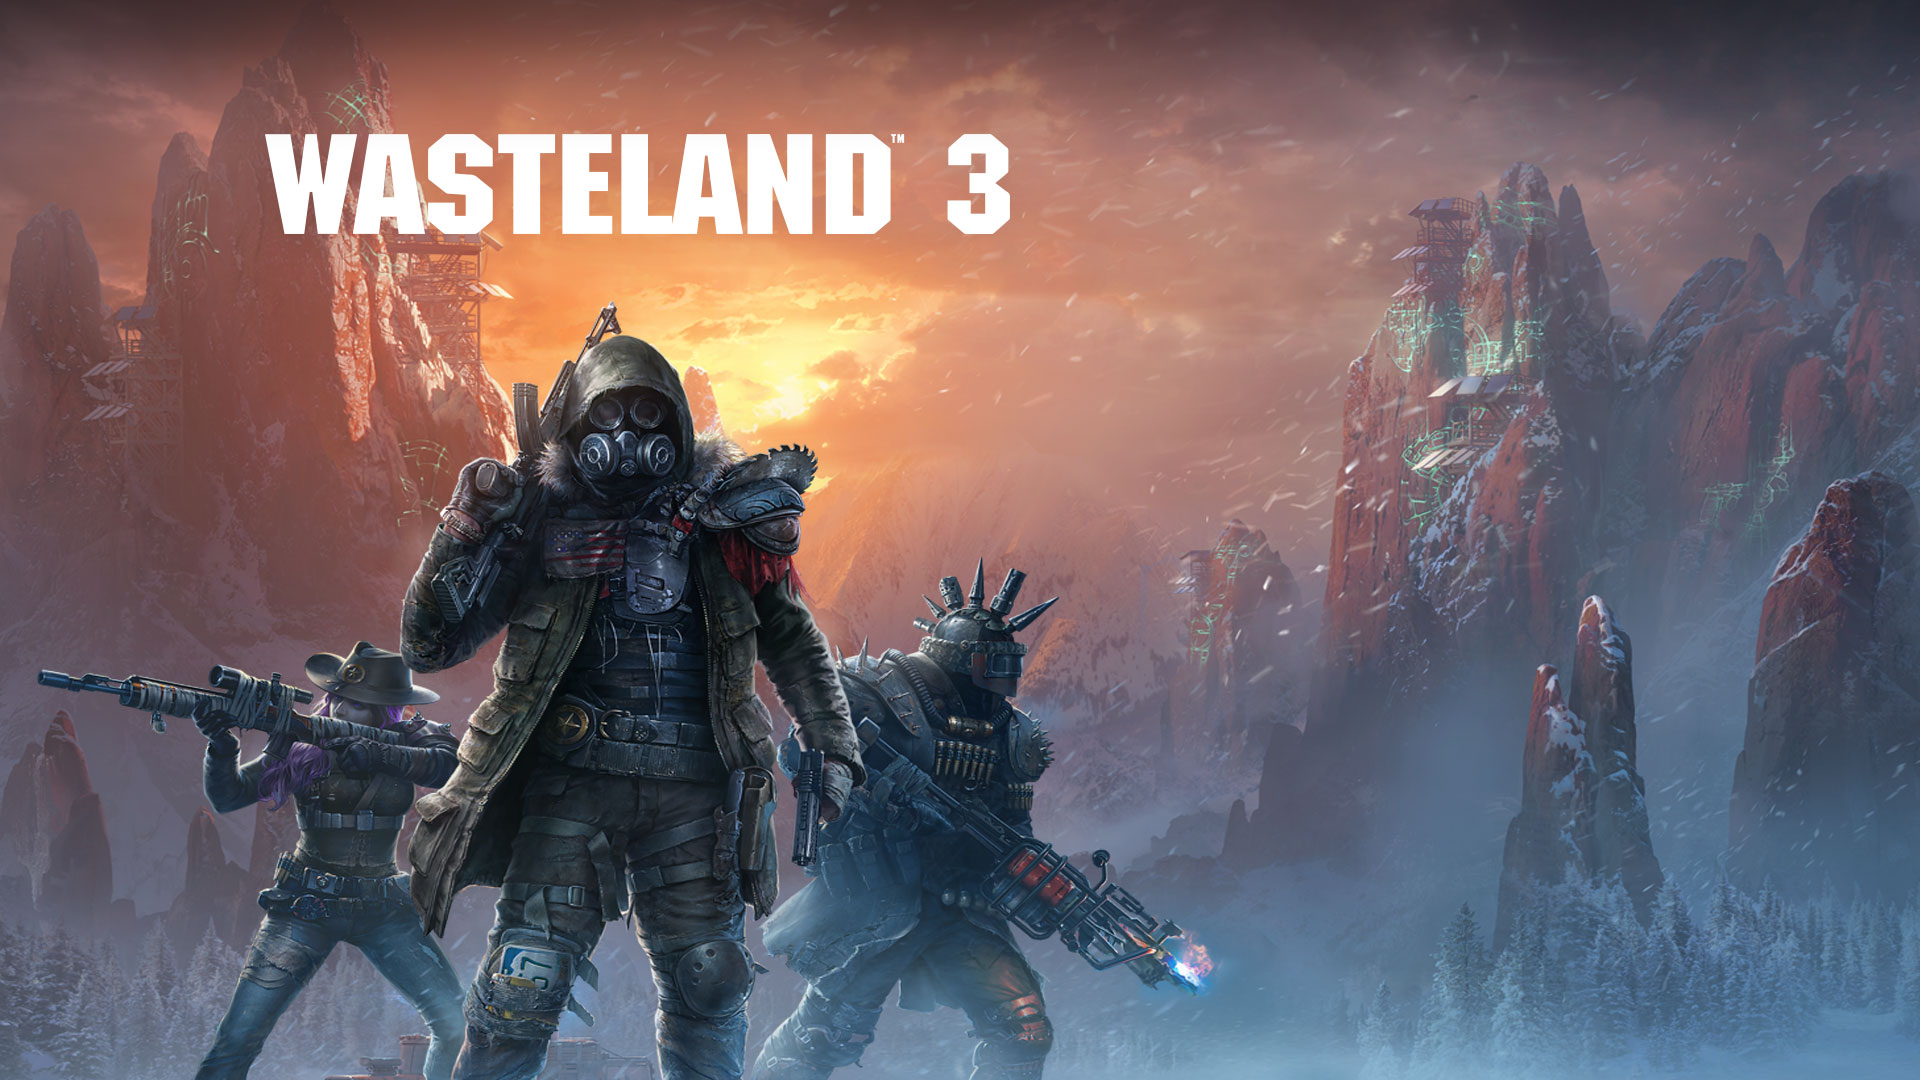 Wasteland 3，3 名全副武裝的角色在暴風雪中戴著防毒面罩